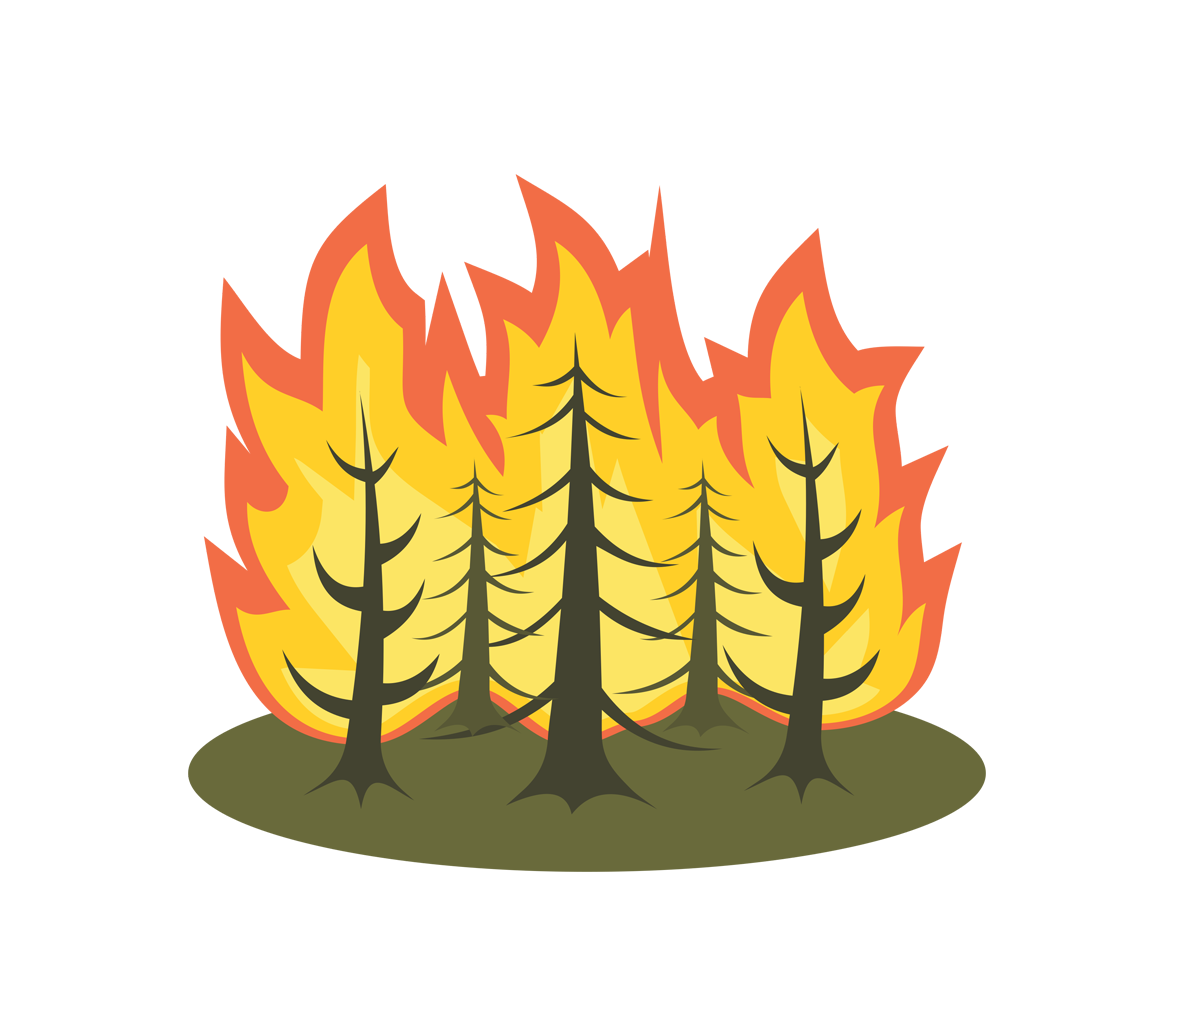 6 + 1 Προτάσεις των Οικολόγων ΠΡΑΣΙΝΩΝ για όσα πρέπει να γίνουν μετά τις καταστροφικές πυρκαγιές στη Βόρεια Εύβοια, την Αττική και την Πελοπόννησο. Να ξεκινήσουν άμεσα πριν τις φθινοπωρινές […]